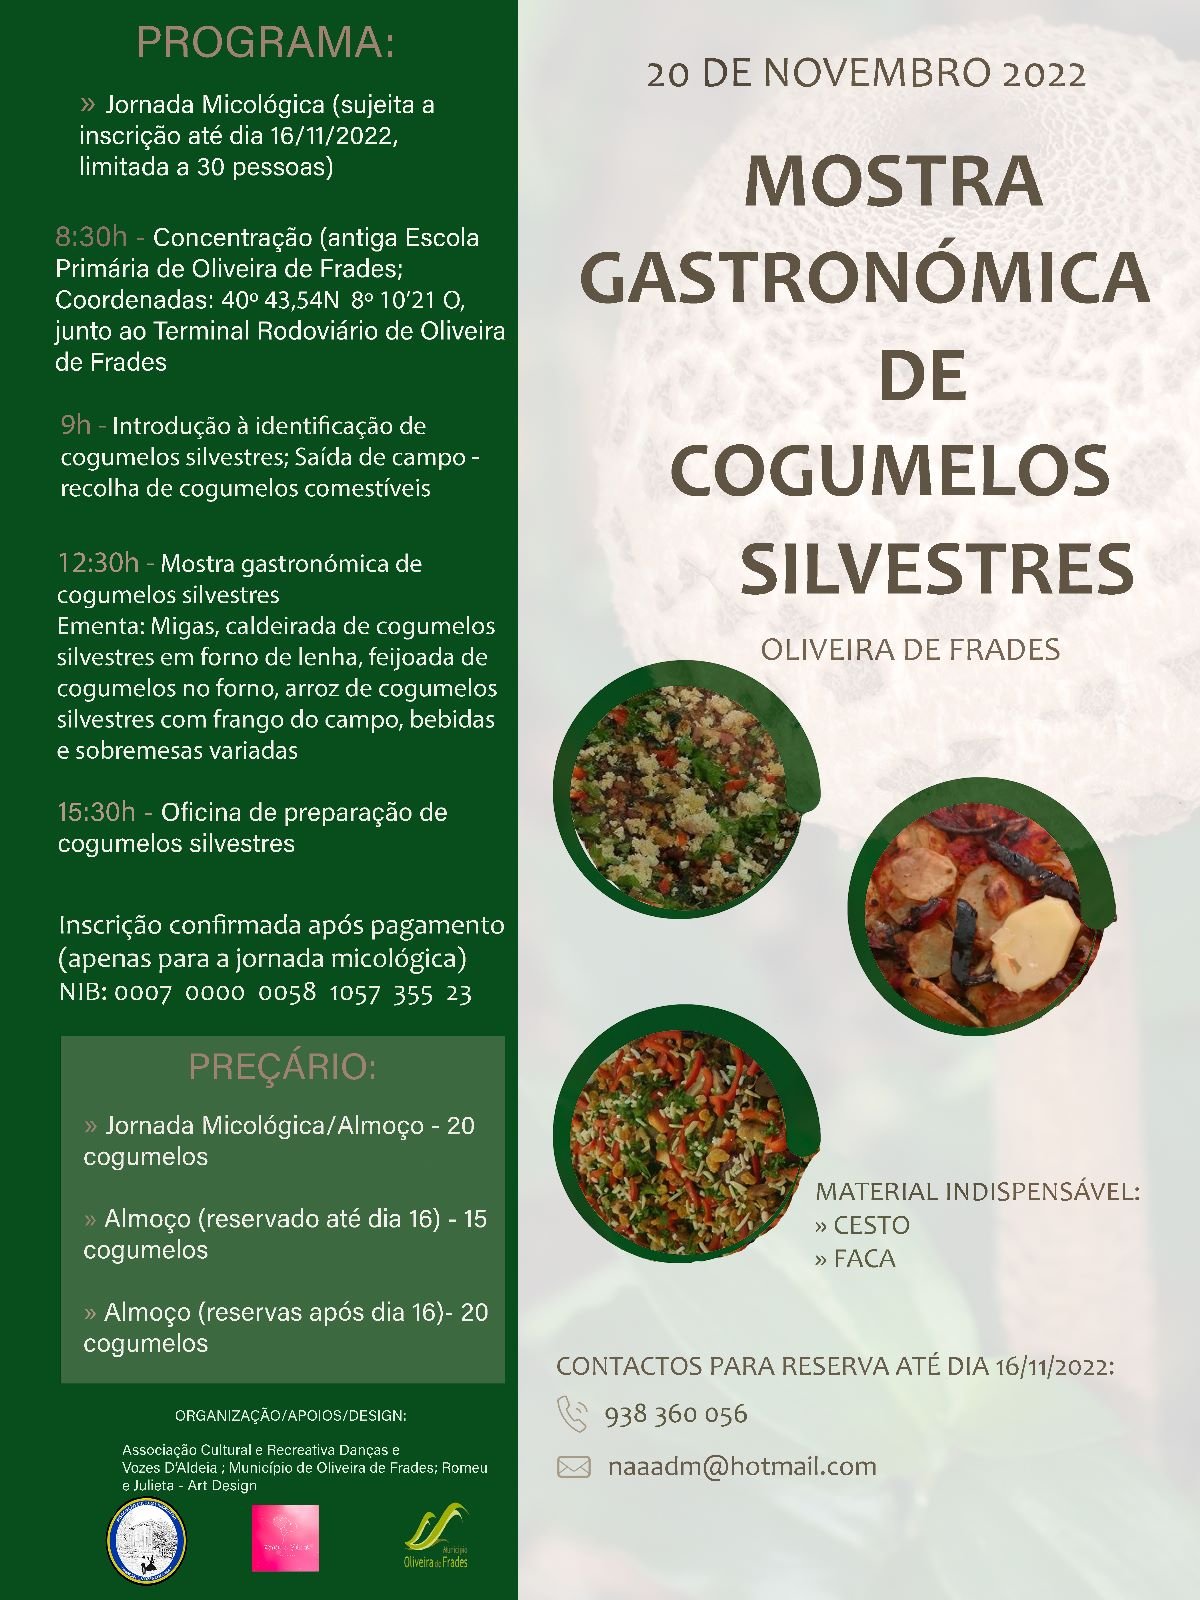 V Edição da Mostra Gastronómica de Cogumelos Silvestres